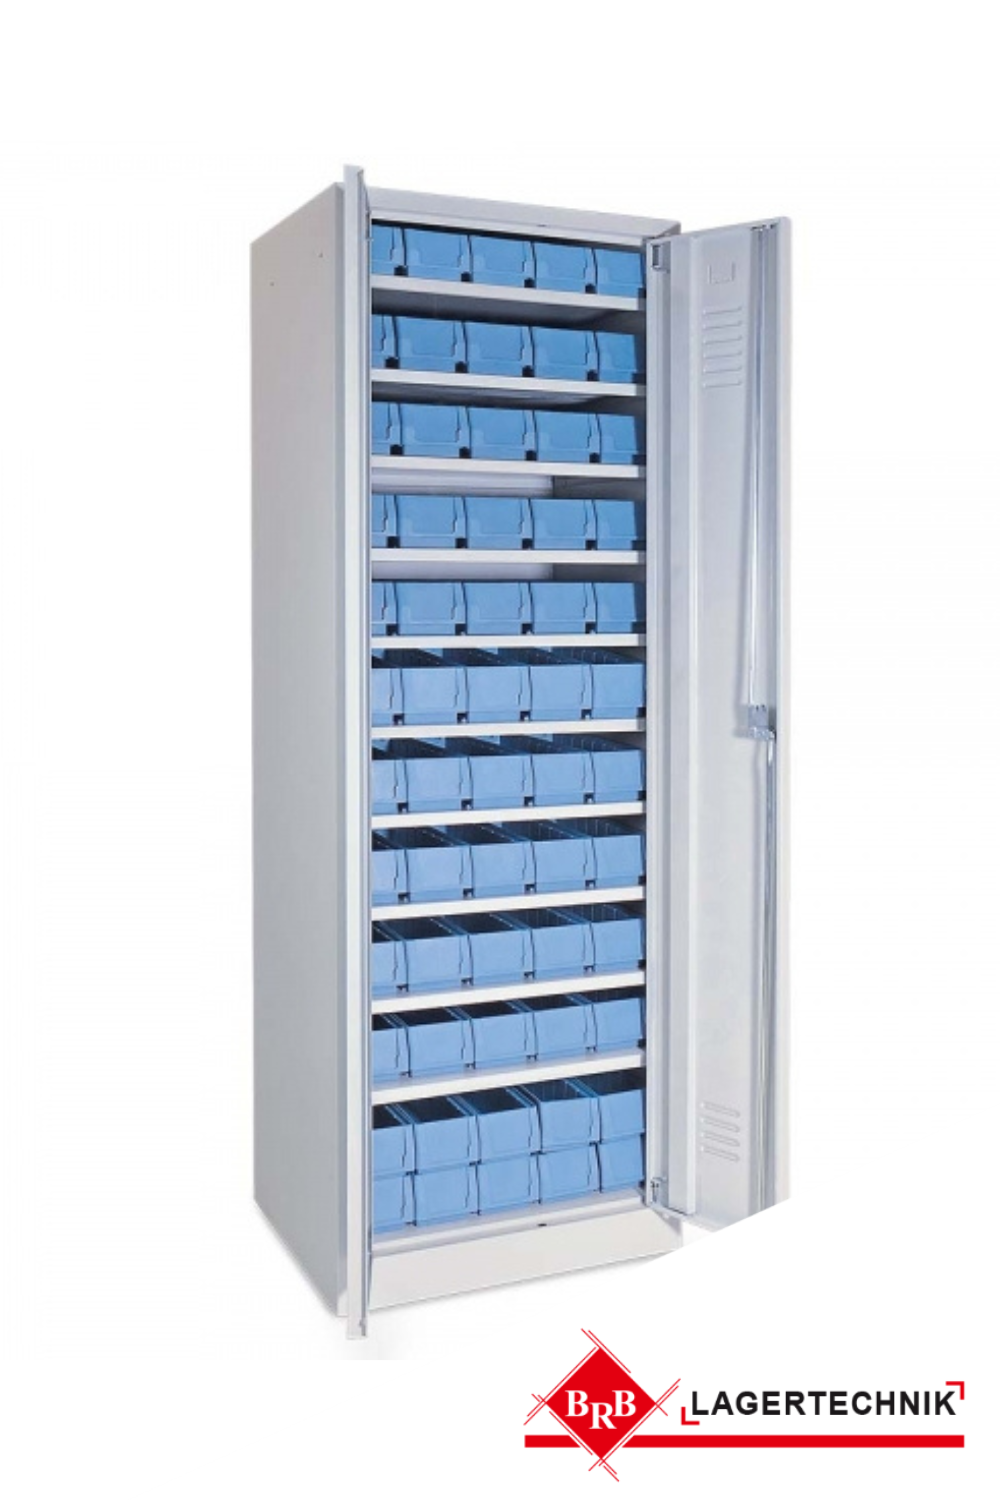 Schrank mit Regalkästen taubenblau, LxBxH 400x117x90 mm, Türen in lichtgrau RAL 7035